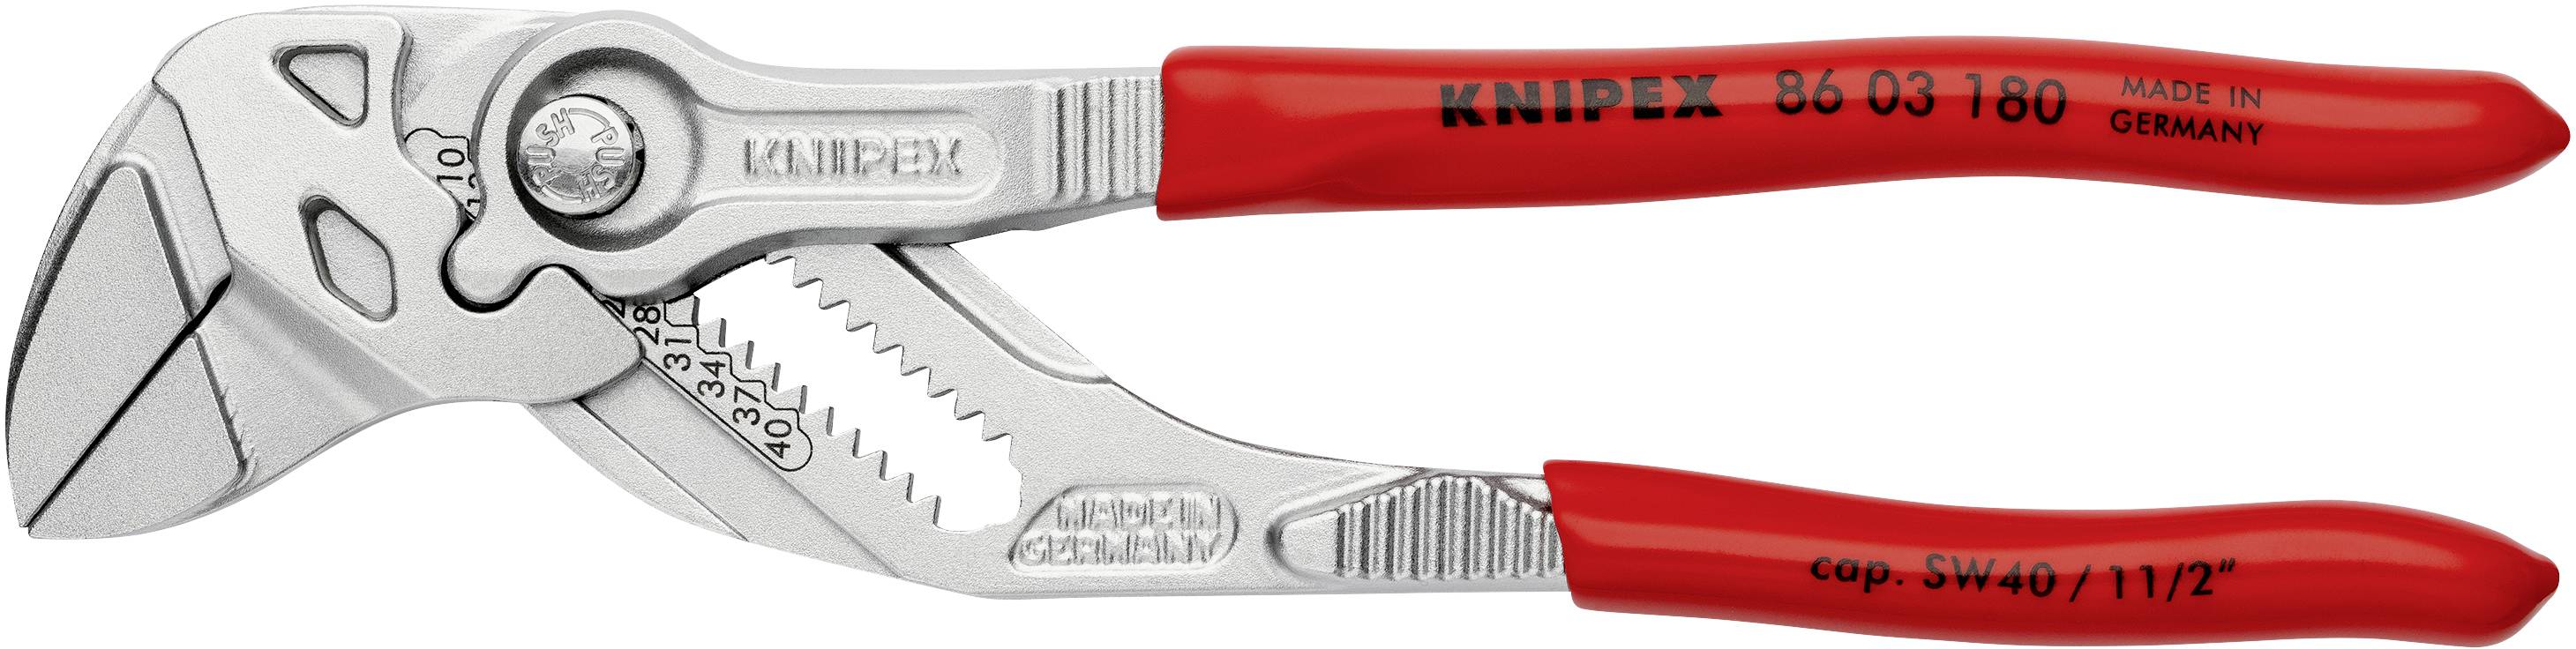 Knipex Pinces clé 180 mm avec poignée en plastique 86 03 180 SB 